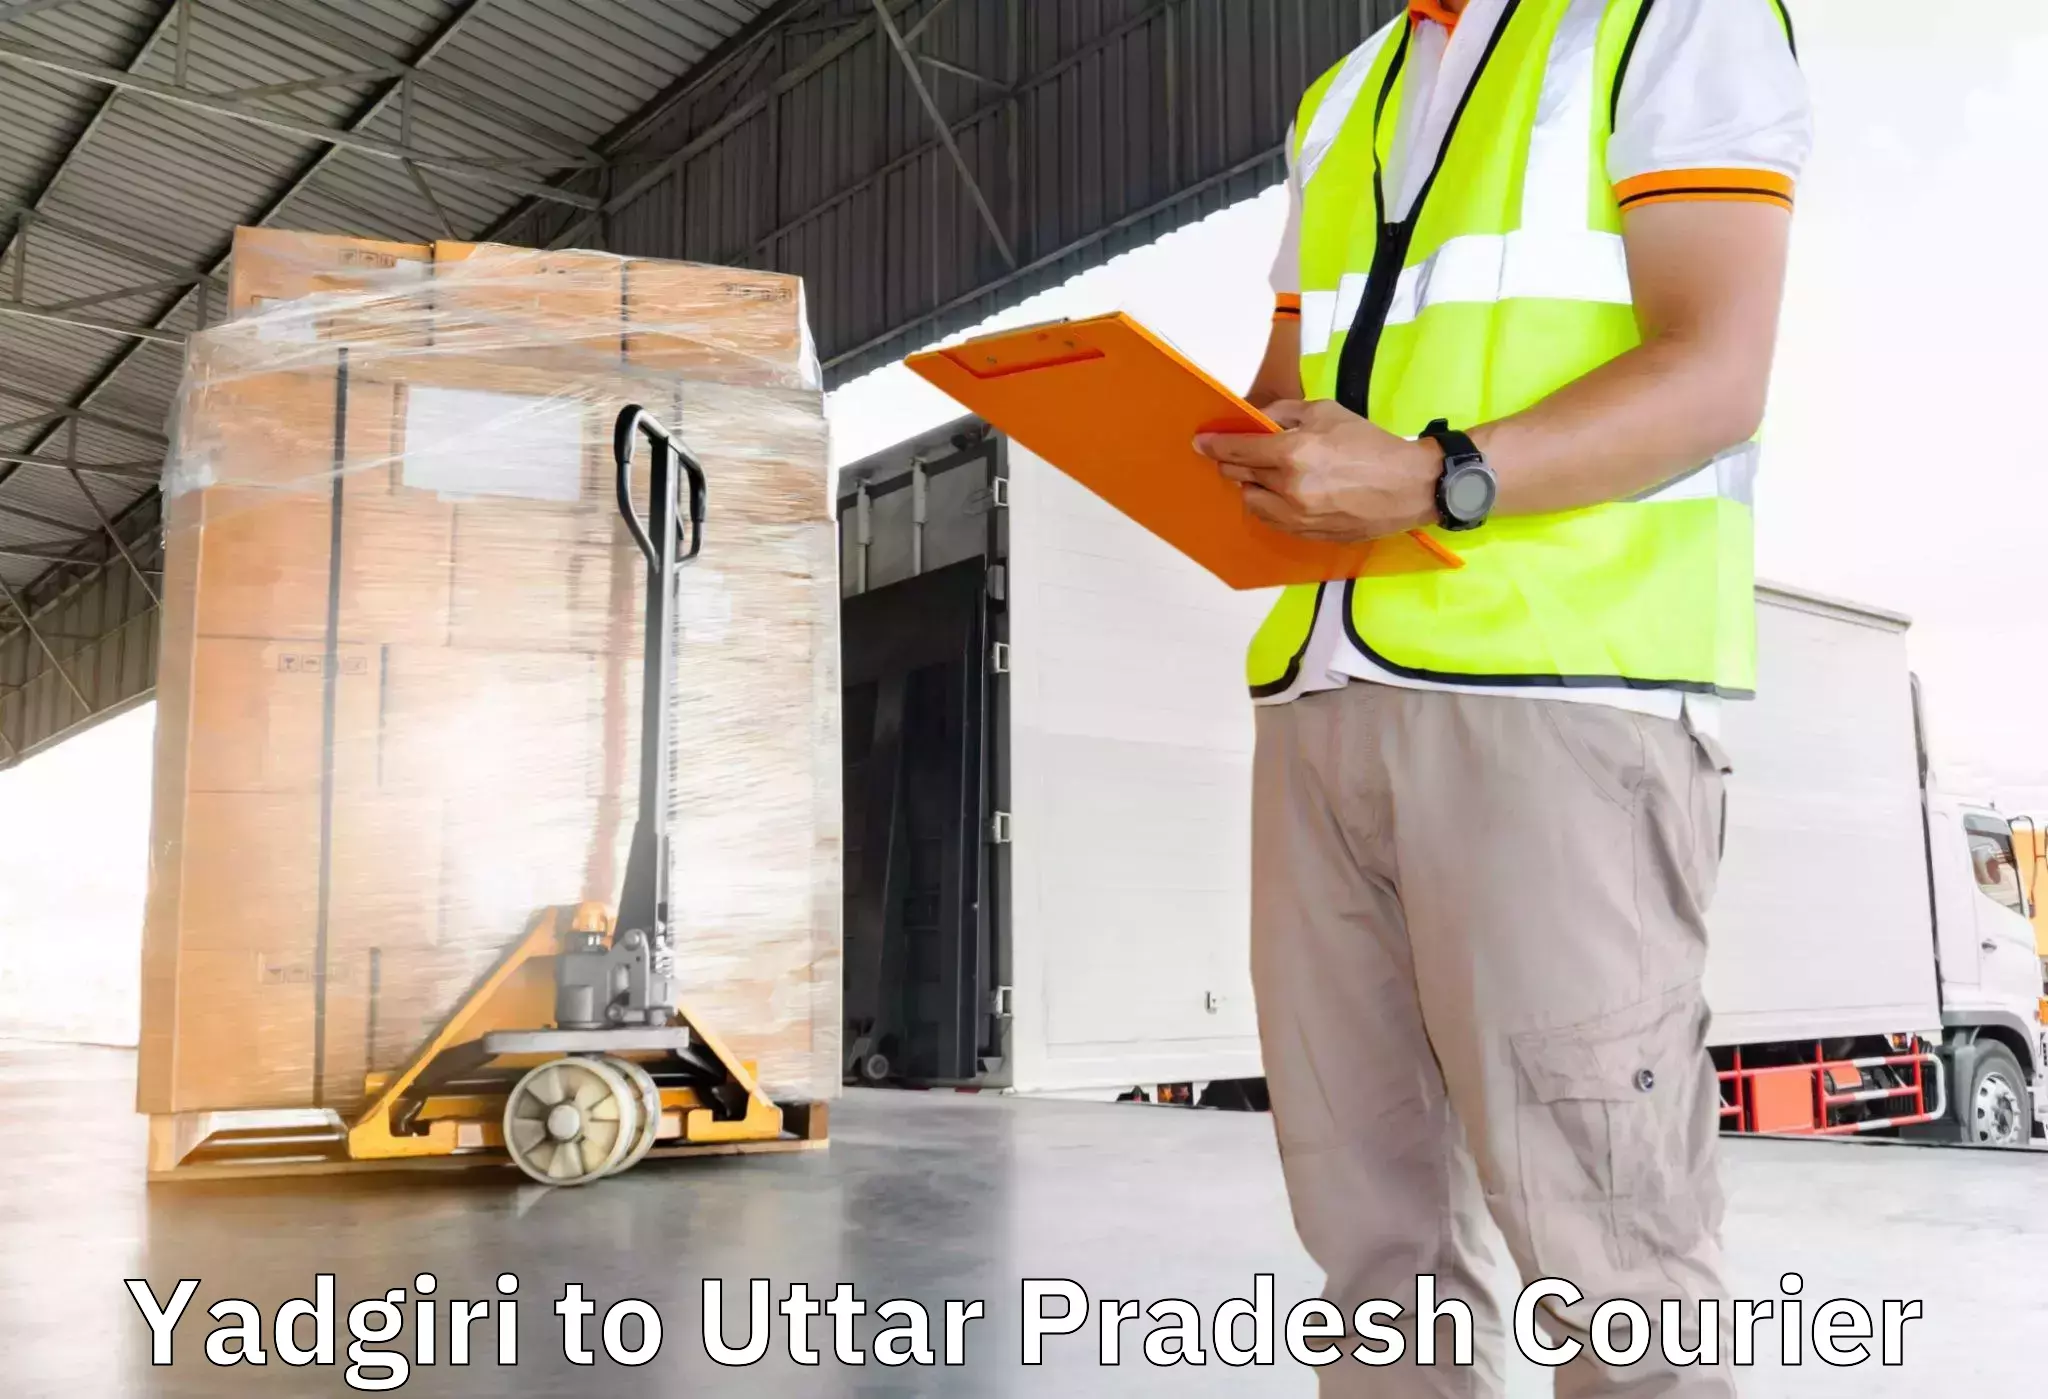 Efficient moving company Yadgiri to Varanasi